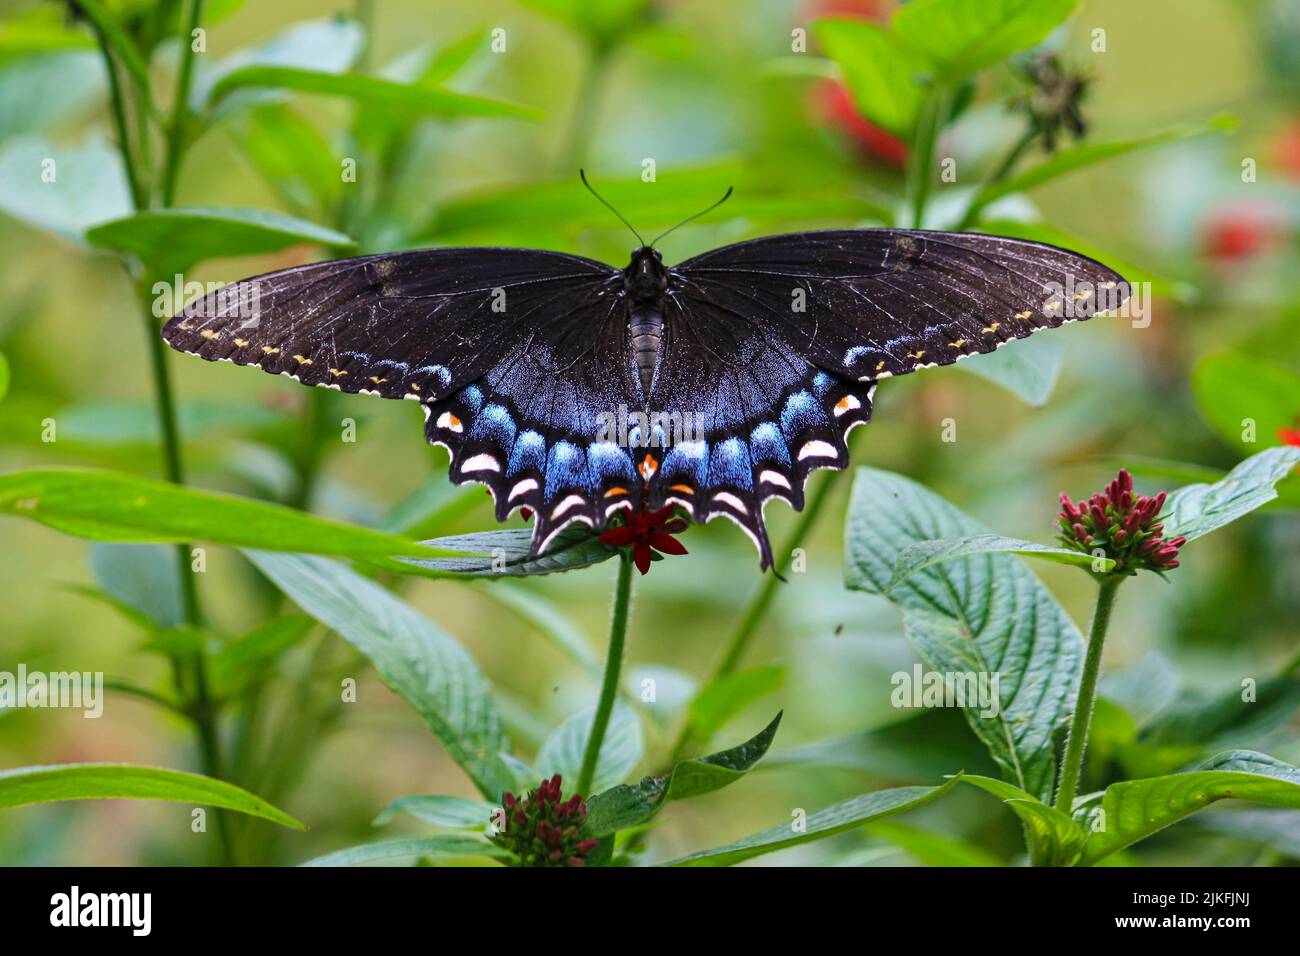 Primo piano di una farfalla nera a coda di rondine su una pianta Foto Stock